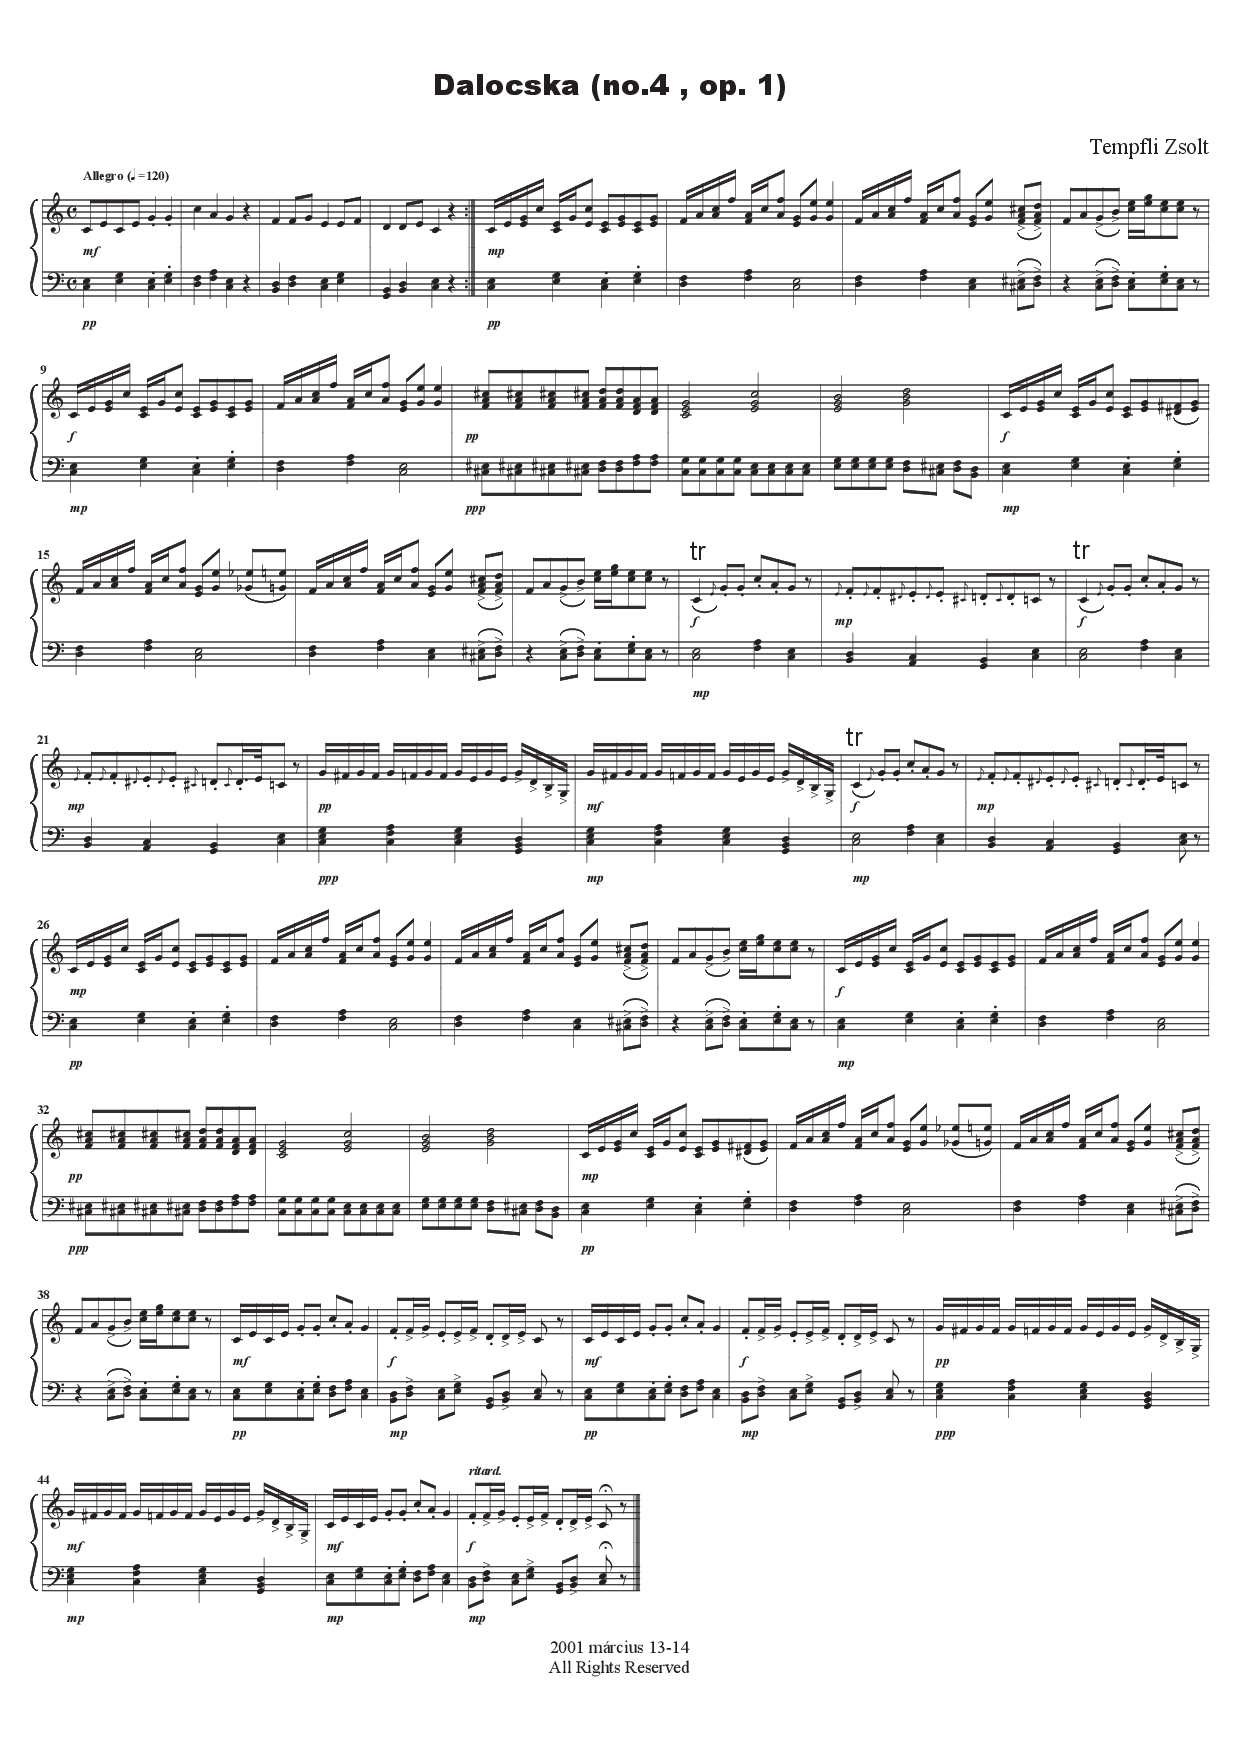 Tempfli Zsolt: Dalocska no. 4 op. 1 no. 4 zongorára